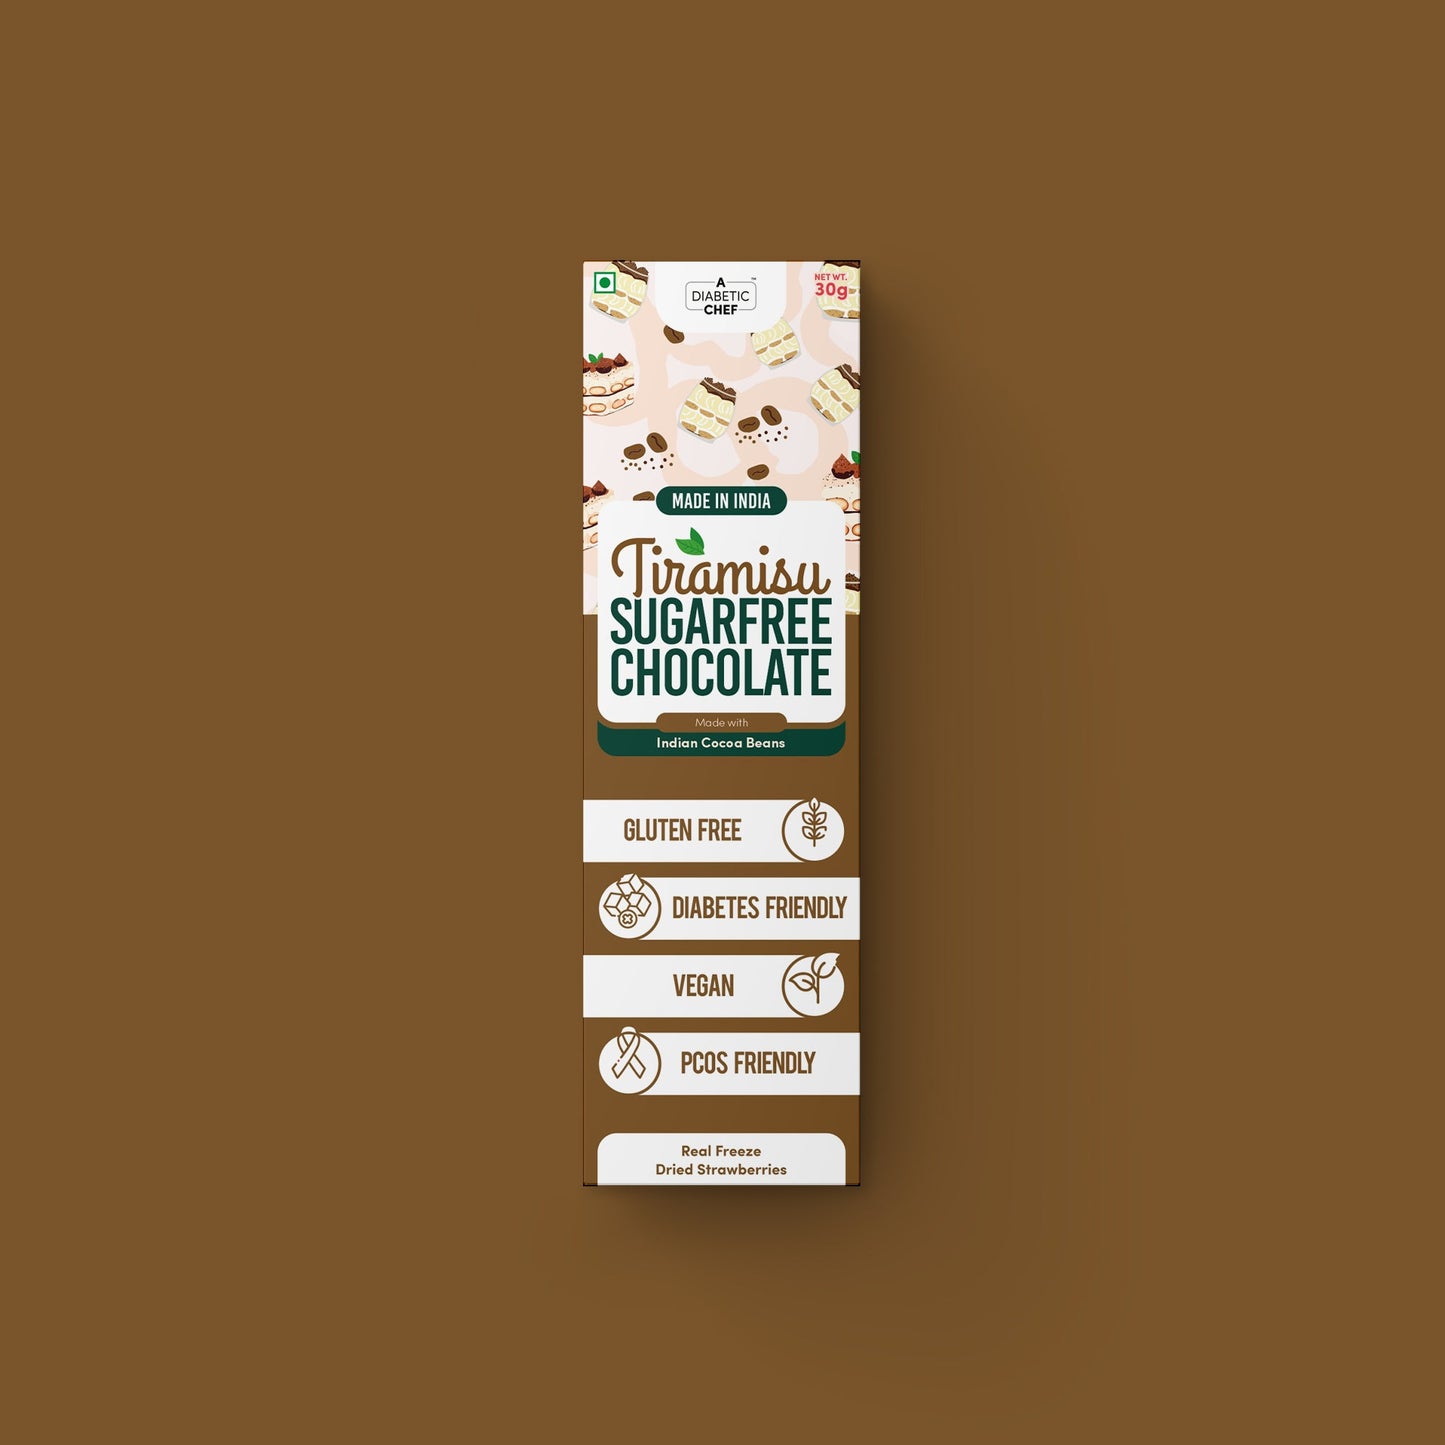 Tiramisu SugarFree Chocolate (Pack of 3) | A Diabetic Chef | Vegan, 30g